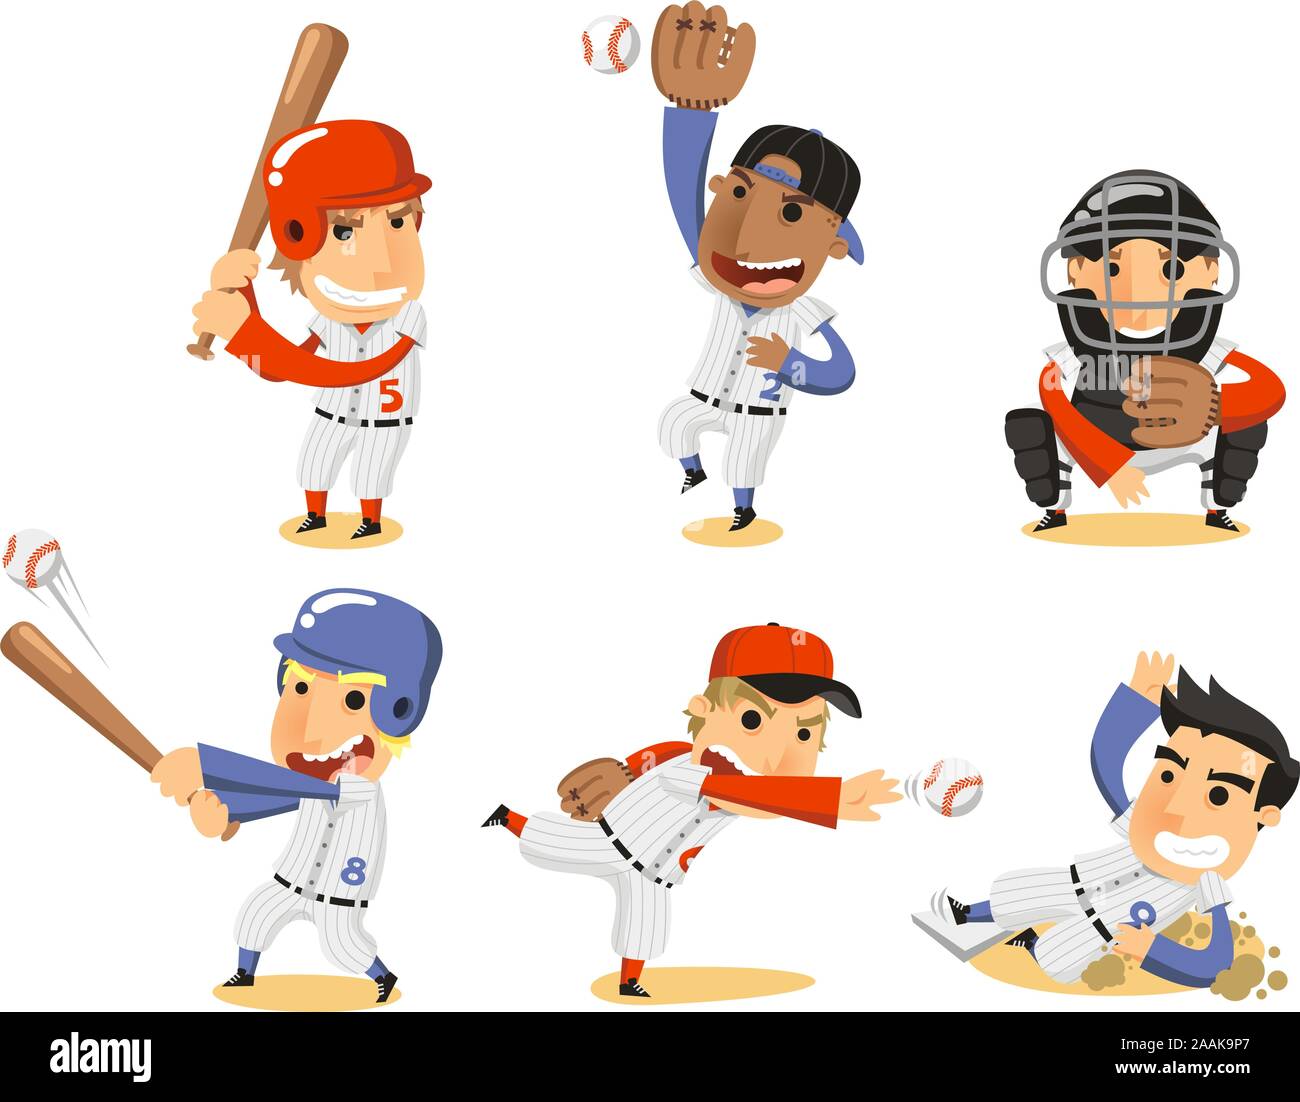 Jeu de Baseball, avec Catcher, lanceur, la troisième base, arrêt-court, l'équipe de mise en pâte et cartoon illustration vectorielle. Illustration de Vecteur